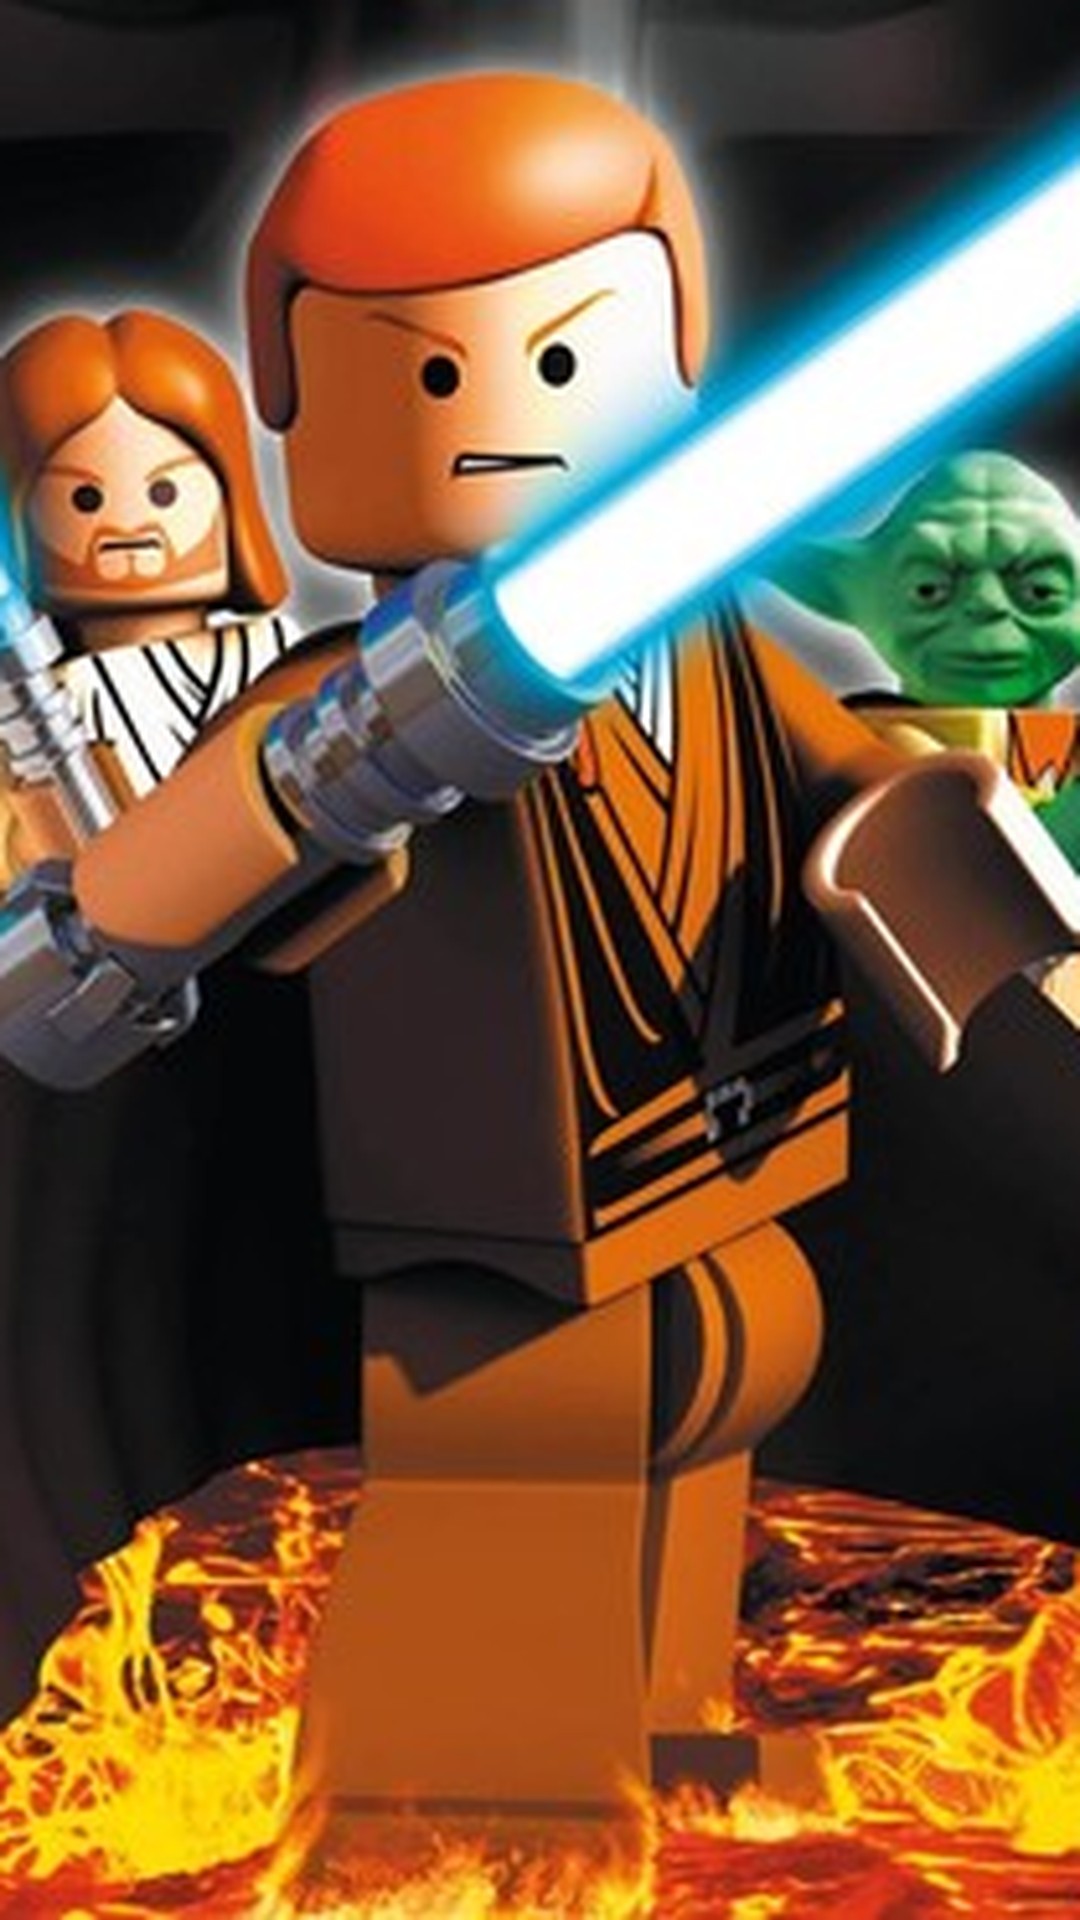 Quais são os requisitos do sistema para LEGO Star Wars: A Saga